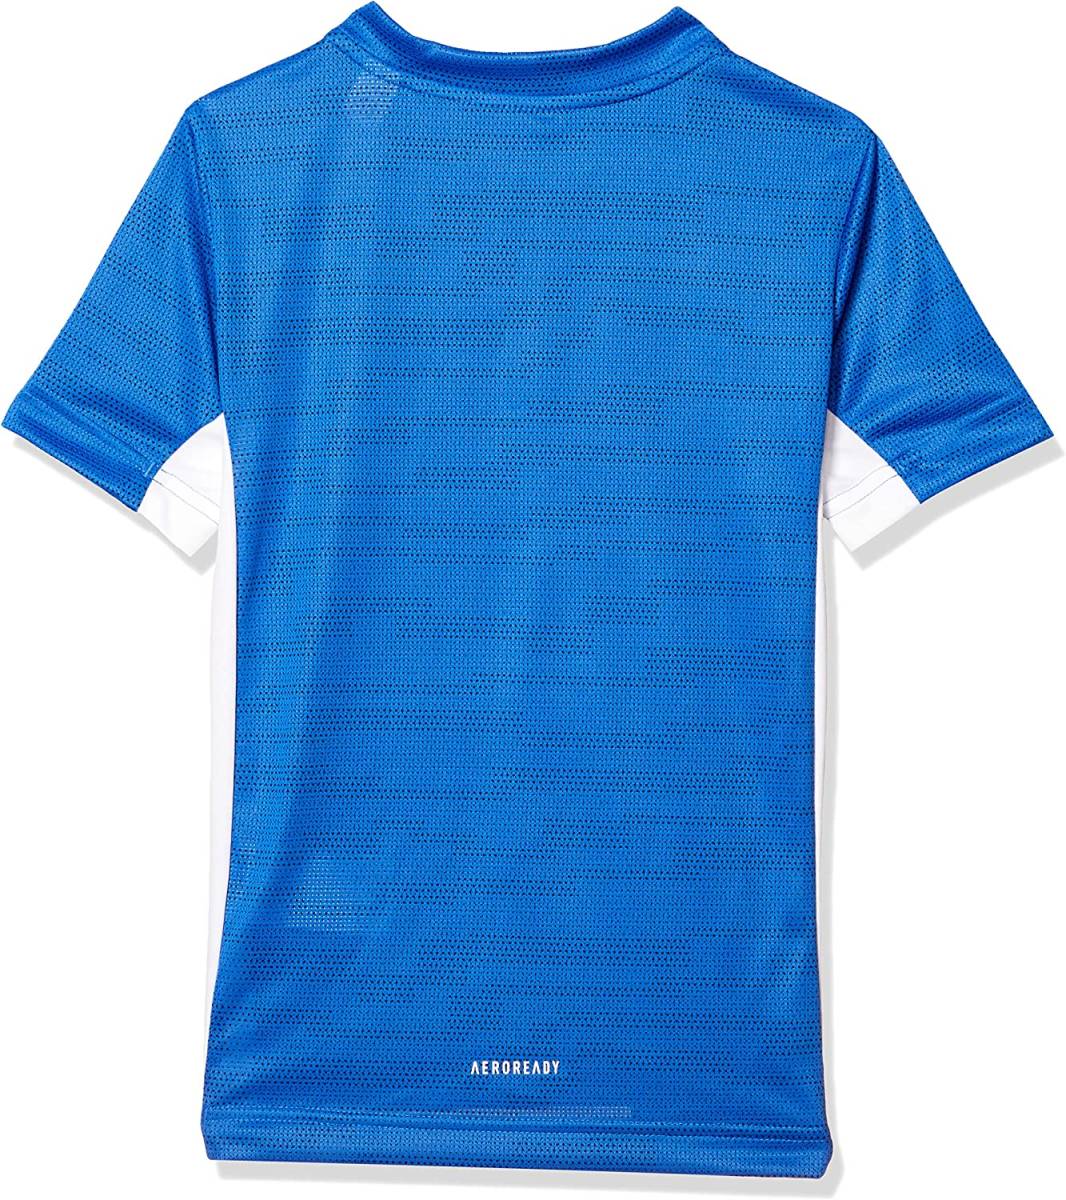 [KCM]Z-adi-87-2s-140* выставленный товар *[adidas] Junior короткий рукав футболка шорты верх и низ в комплекте GSV58-FM1713 голубой / темно-синий 140